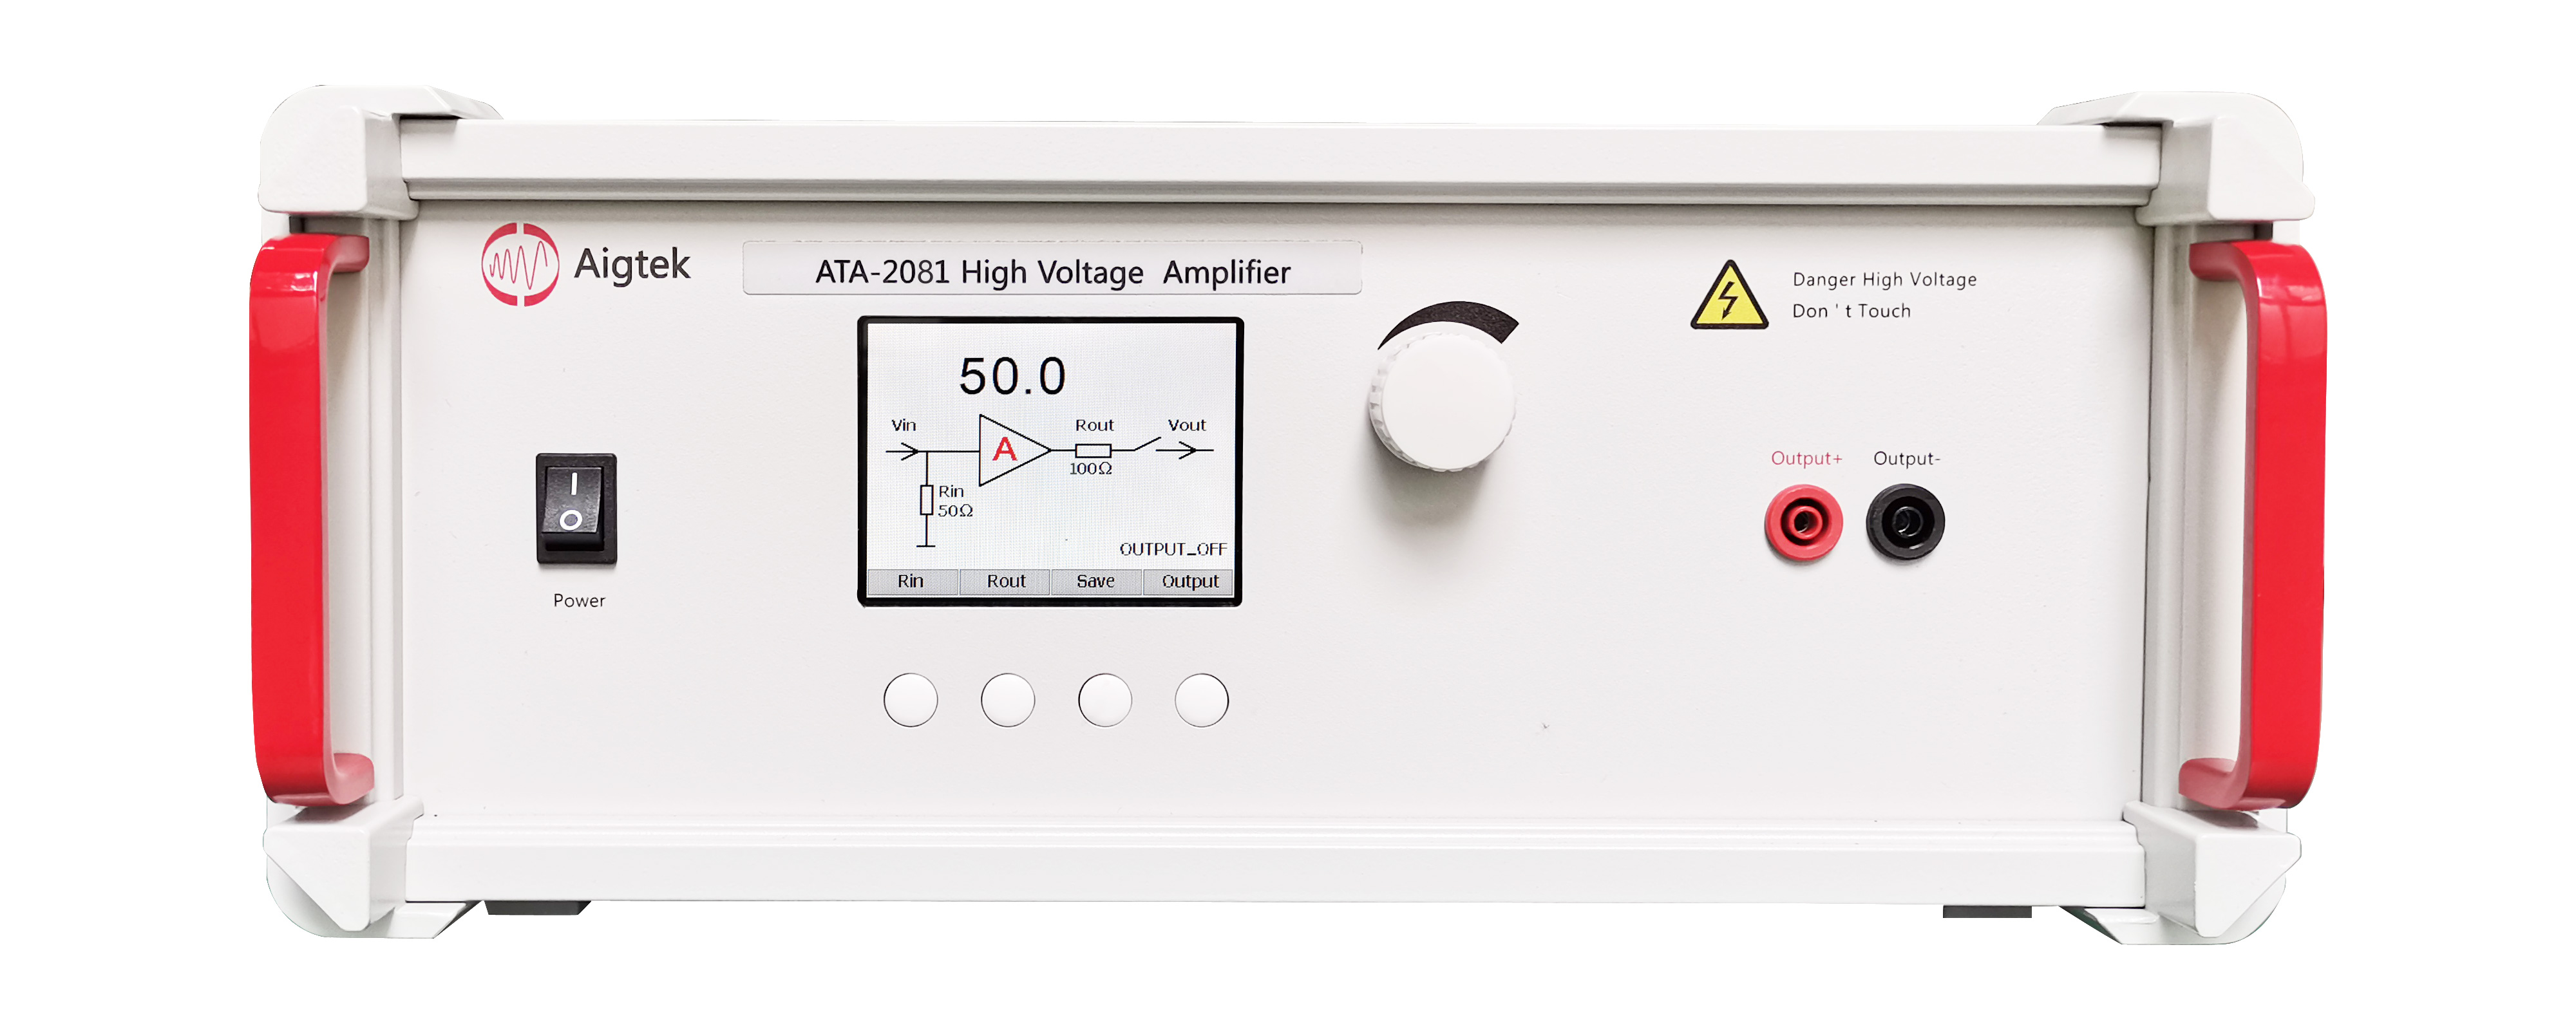 ATA-2081高压放大器在超声切割磨削中的具体应用